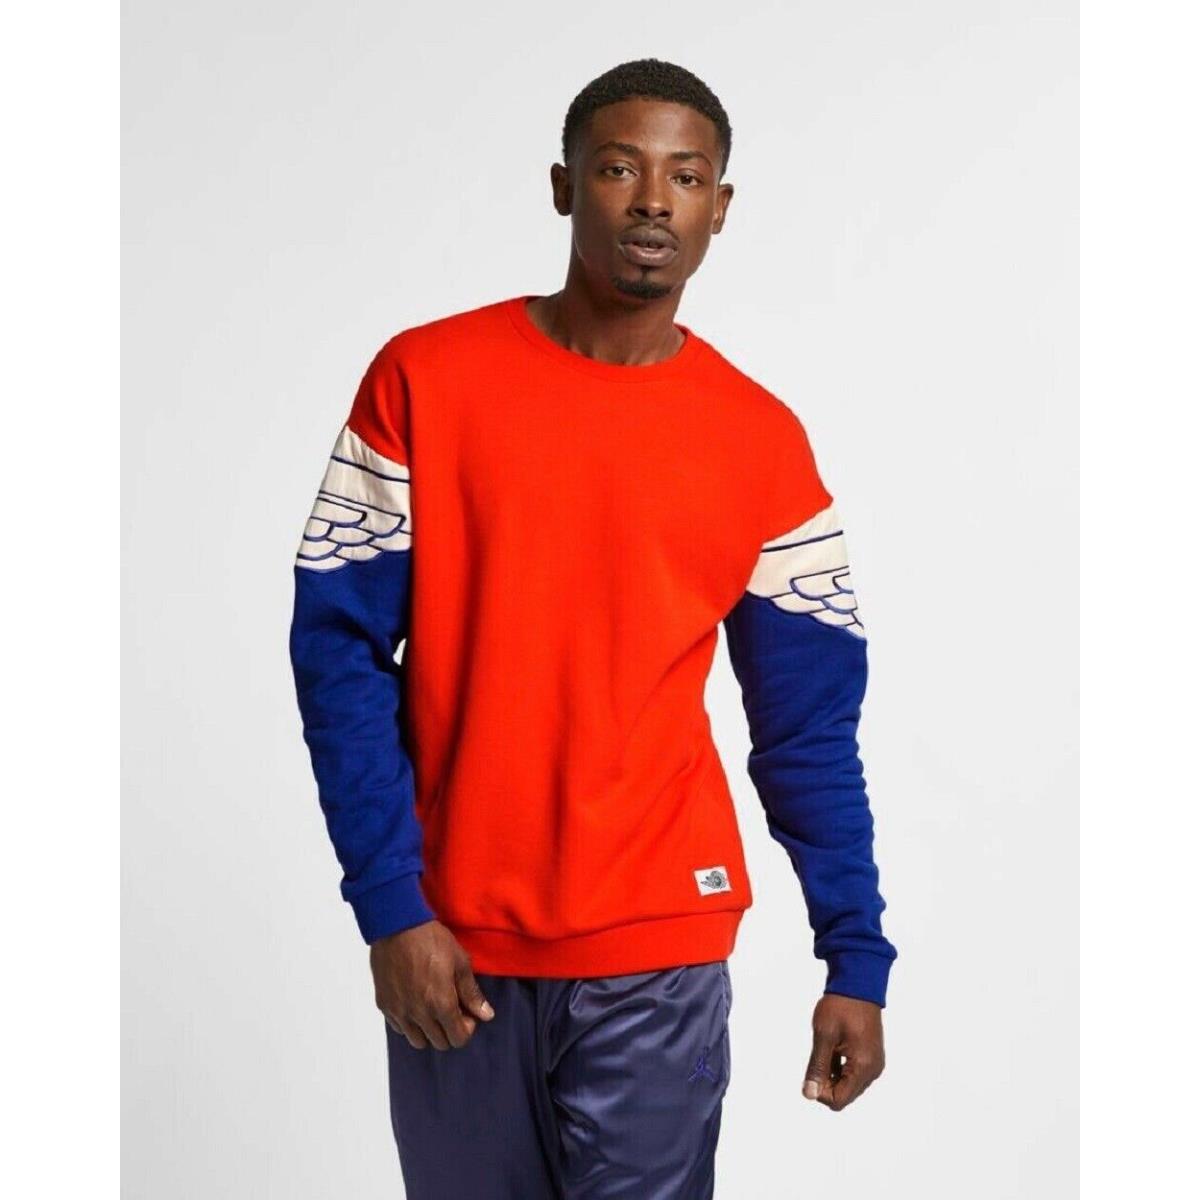 Nike clothing  - Orange 1